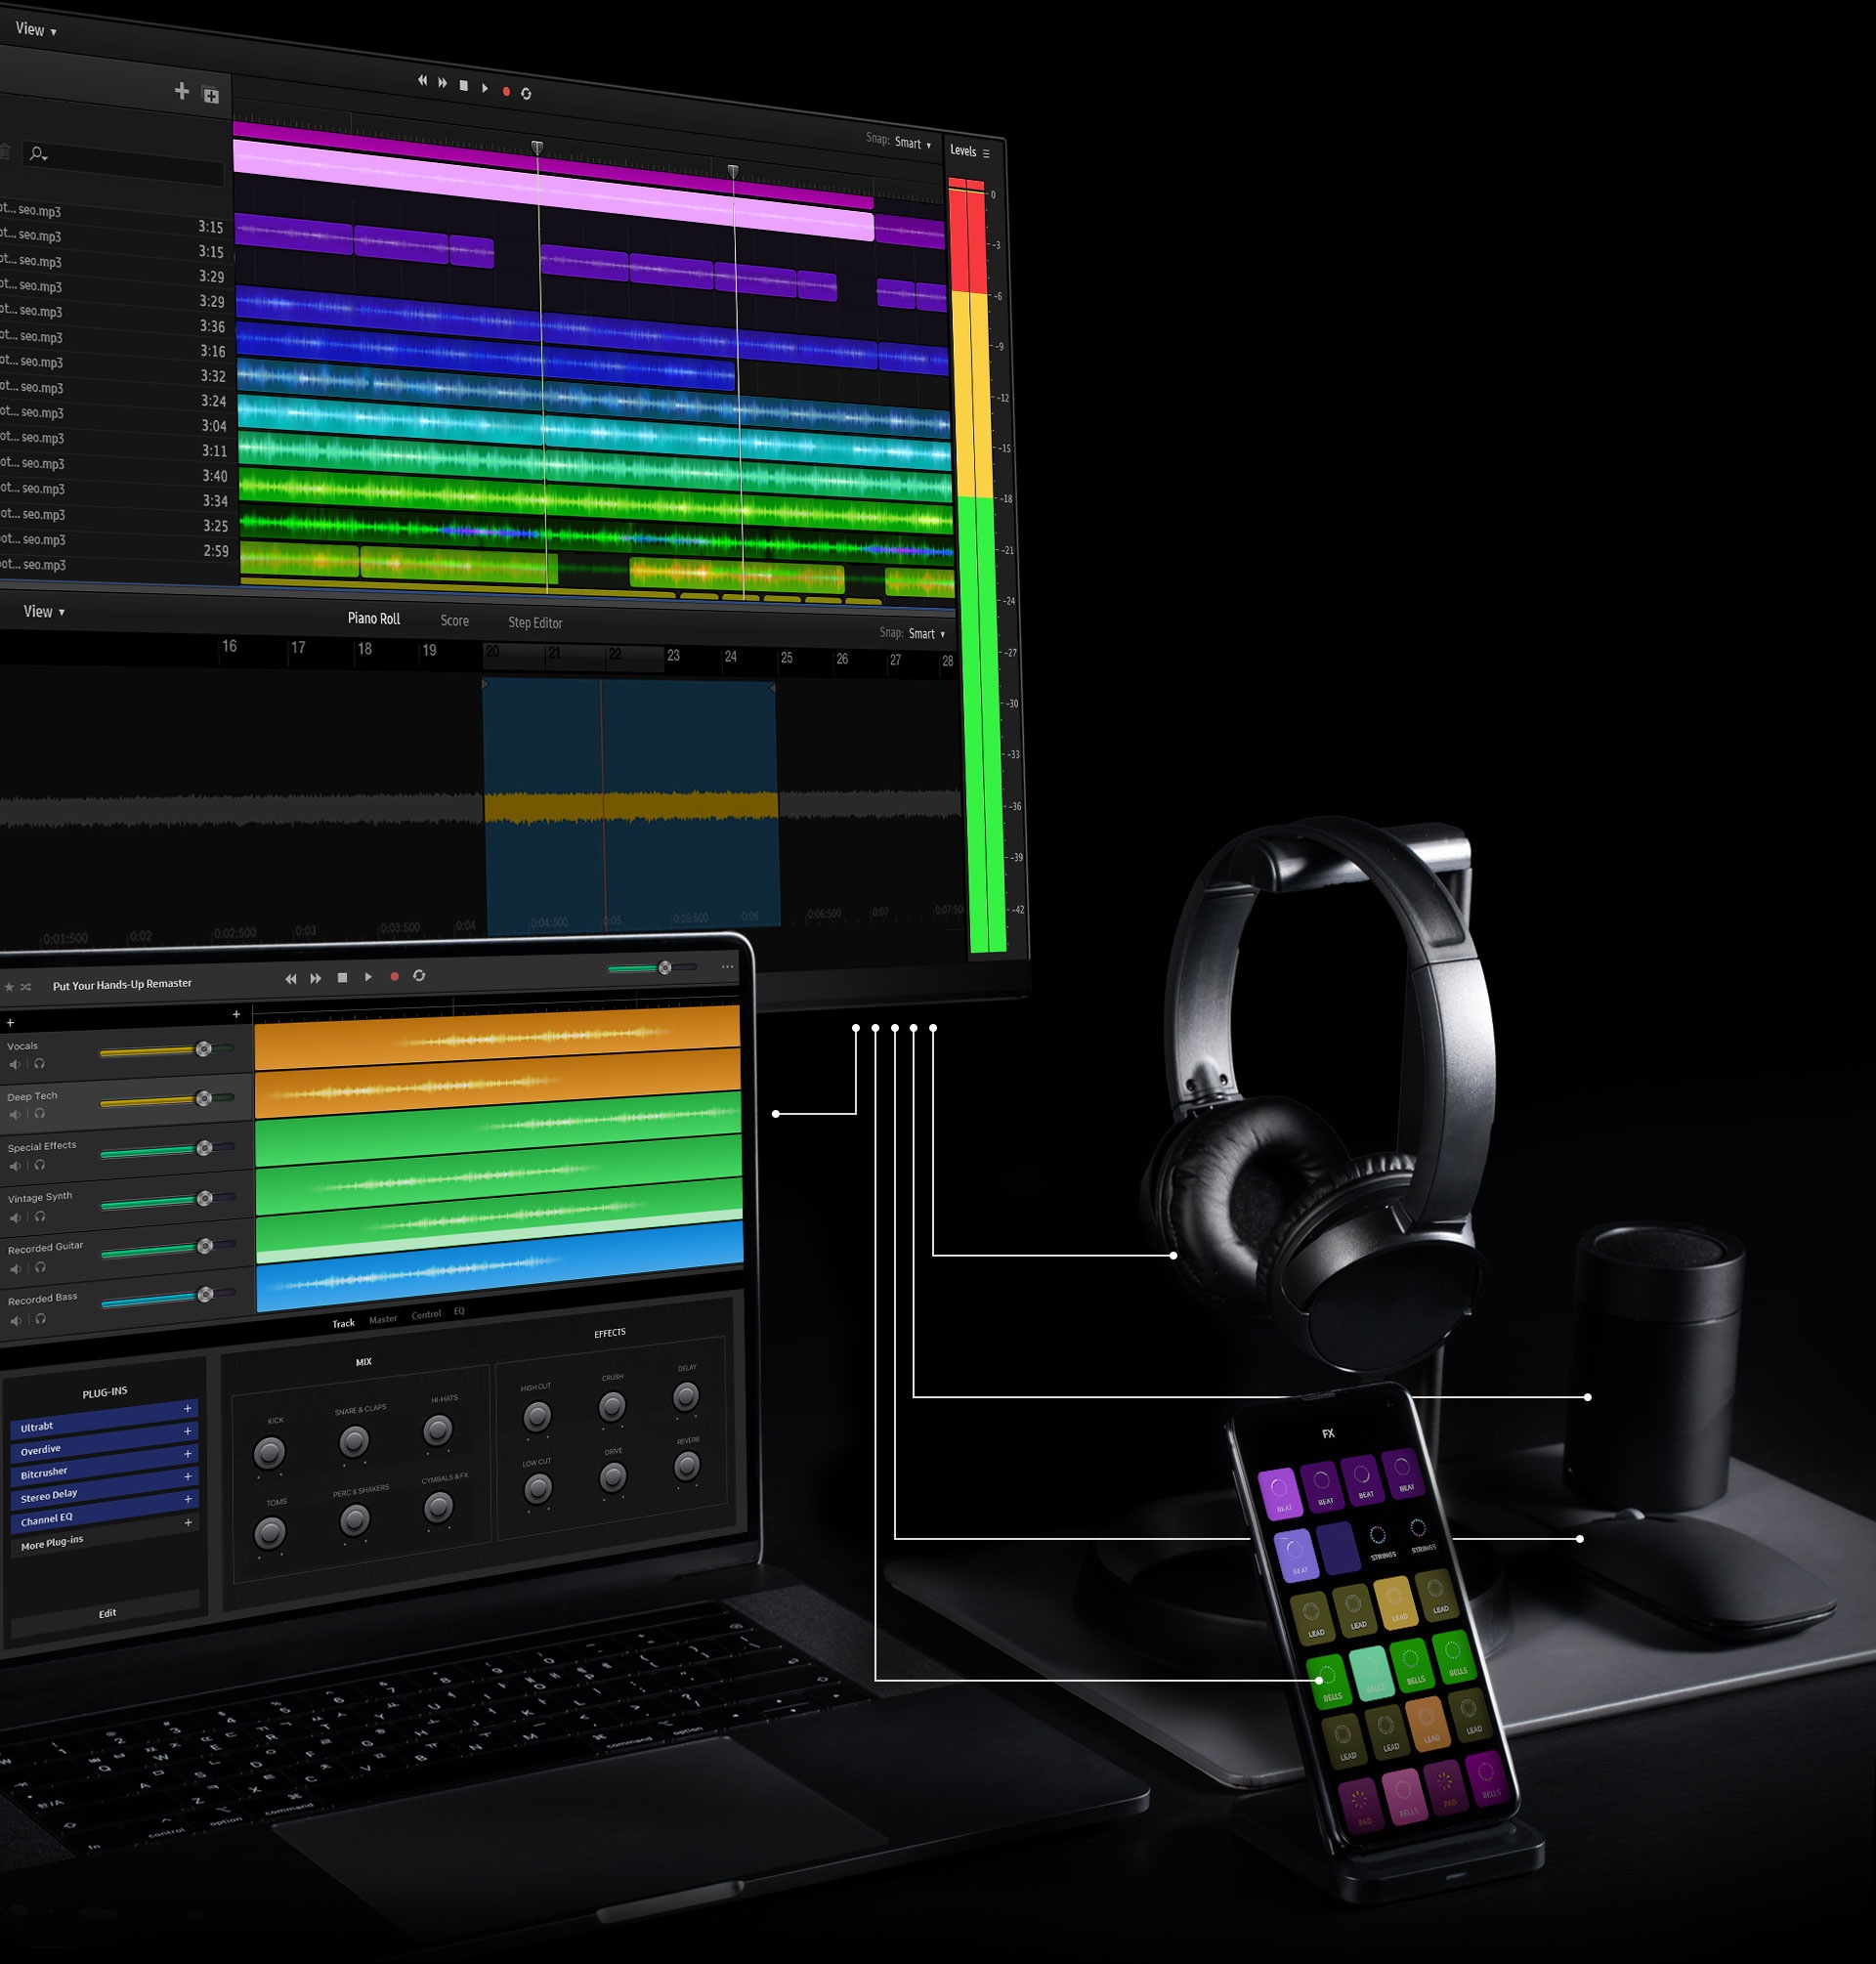 Täysi telakointiasema sisältää näytön, kannettavan tietokoneen, mobiililaitteen, kuulokkeet, hiiren ja kaiuttimen. Valkoiset viivat osoittavat, kuinka laitteet voivat muodostaa yhteyden monitorin kautta. Näytön näytöllä on musiikin muokkausohjelmisto, joka näyttää useita kerroksia musiikkikappaleesta vihreällä, sinisellä, vaaleanpunaisella ja violetilla värillä. Kannettavan tietokoneen näytöllä, joka on sijoitettu näytön alapuolelle, näkyy erilainen musiikin muokkausohjelmisto. Tämä näyttää lisää musiikkikappaleiden kerroksia sinisenä, vihreänä ja oranssina. Mobiililaite, joka on sijoitettu näytön ja kannettavan tietokoneen oikealle puolelle, näyttää useita suodatinvaihtoehtoja violetilla, khakinvihreällä, beigellä ja ruskealla värillä.